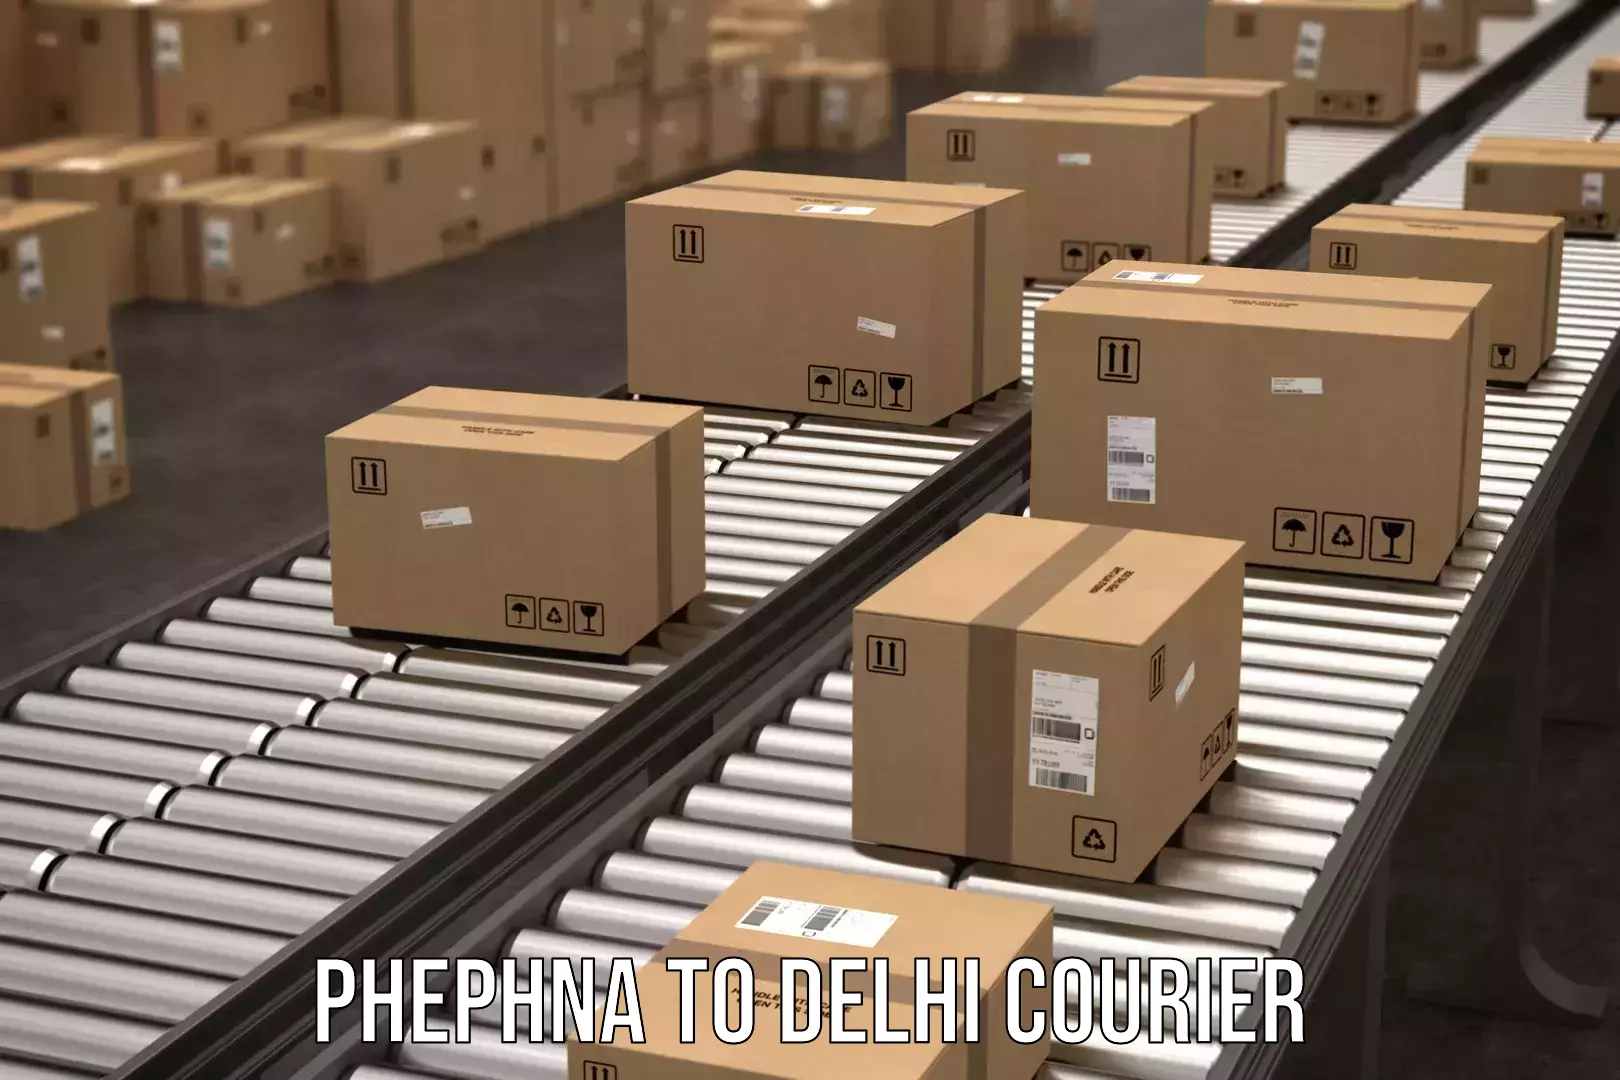 User-friendly courier app Phephna to IIT Delhi